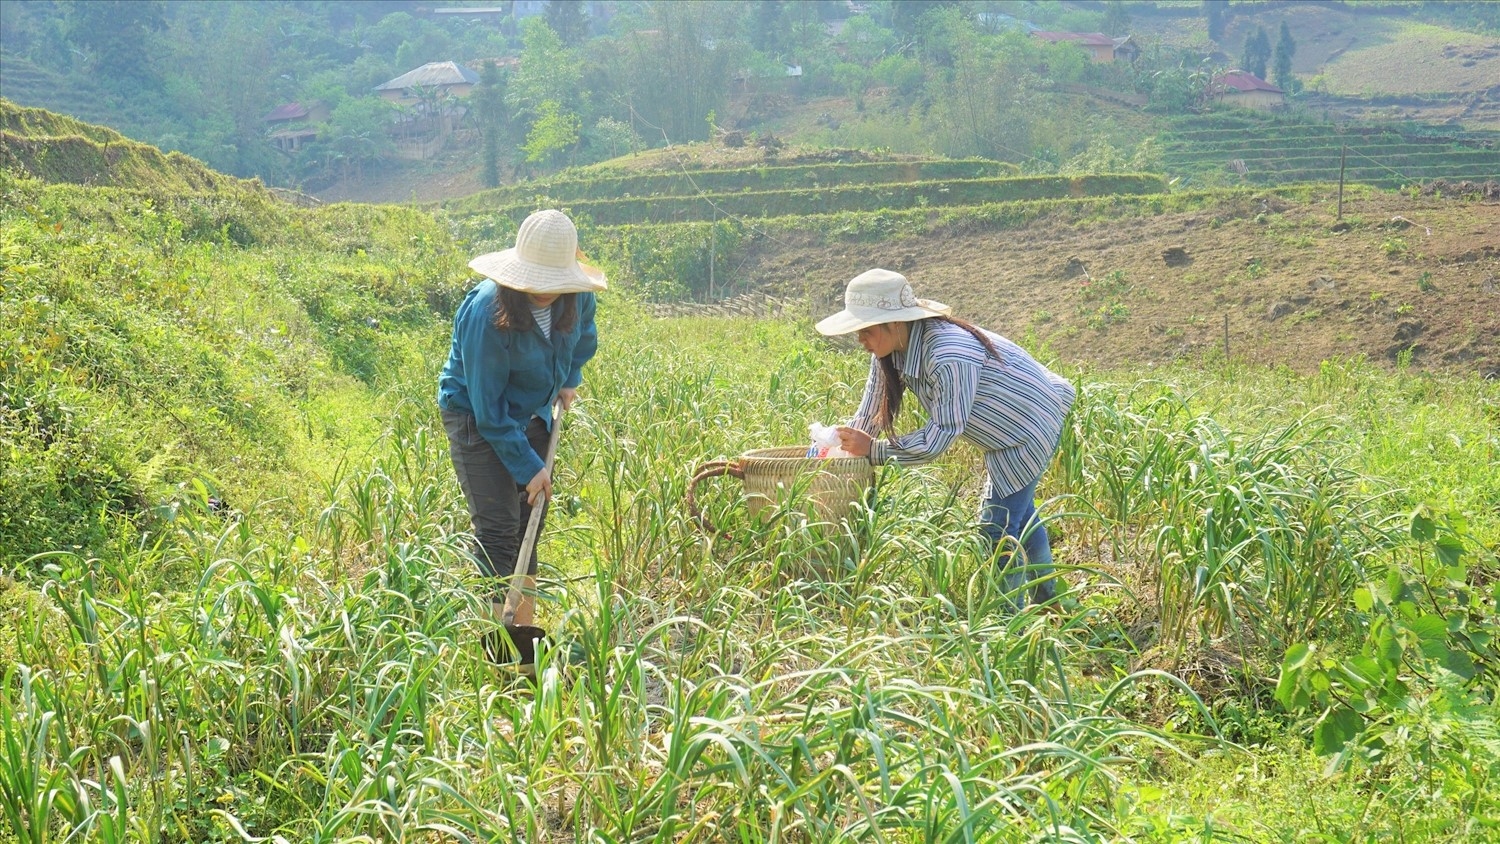 Trong lĩnh vực hỗ trợ sản xuất, tỉnh Lào Cai chủ trương sẽ phát triển theo chuối giá trị